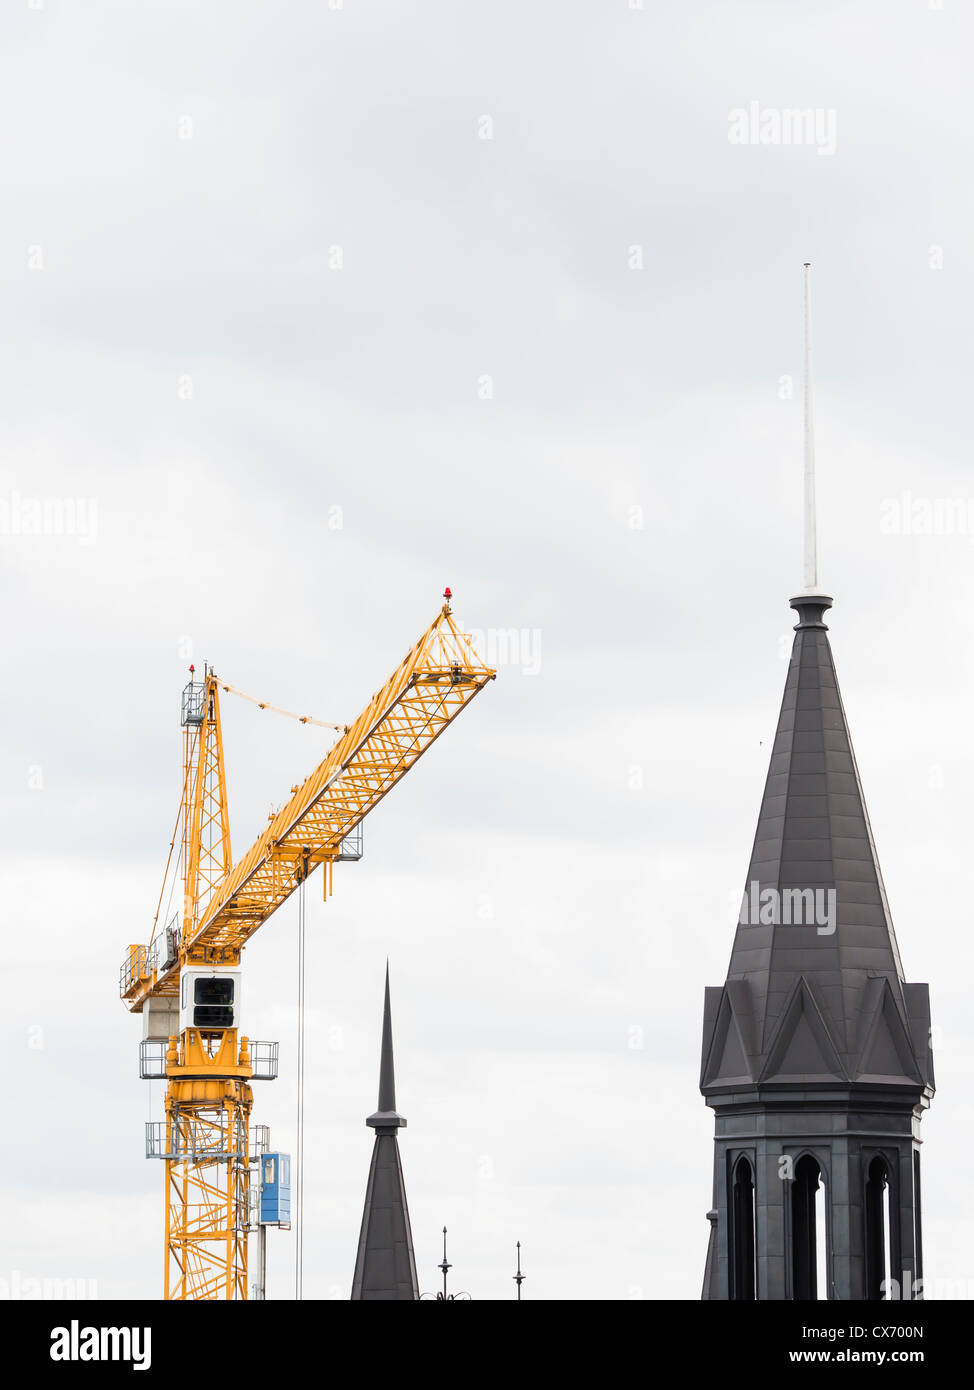 Stadtentwicklung in Stockholm, Stahl Kran neben alten Turm Stockfoto